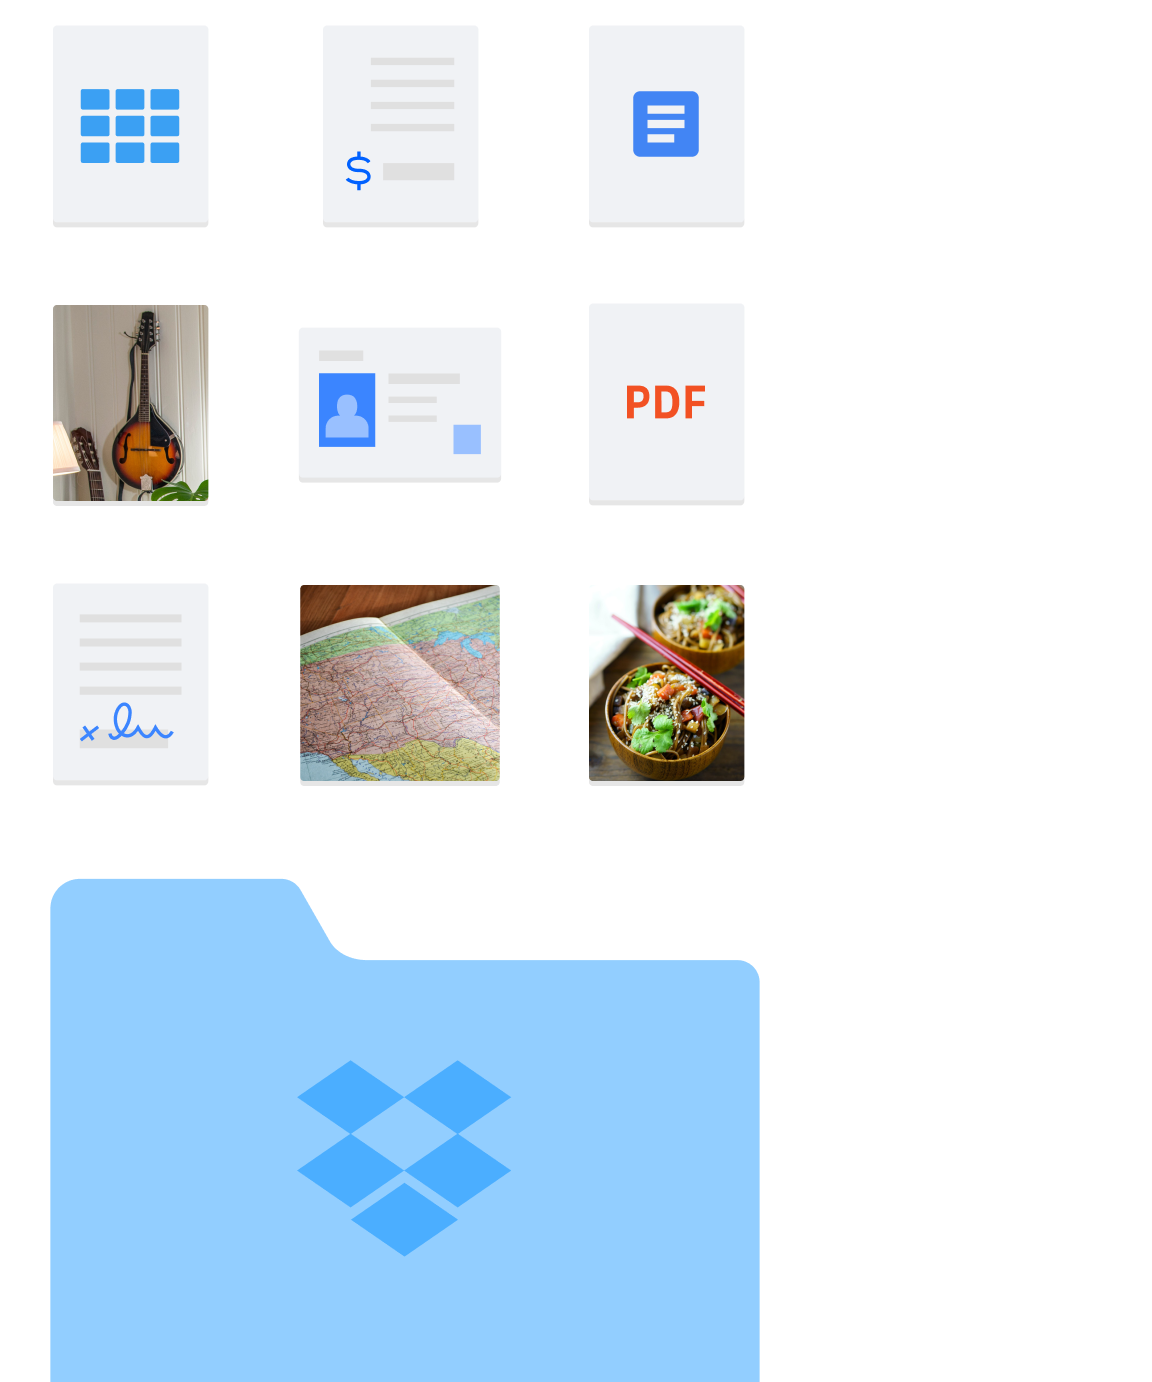 Immagini di diversi tipi di file e cartelle, come immagini e documenti, contenuti in Dropbox.